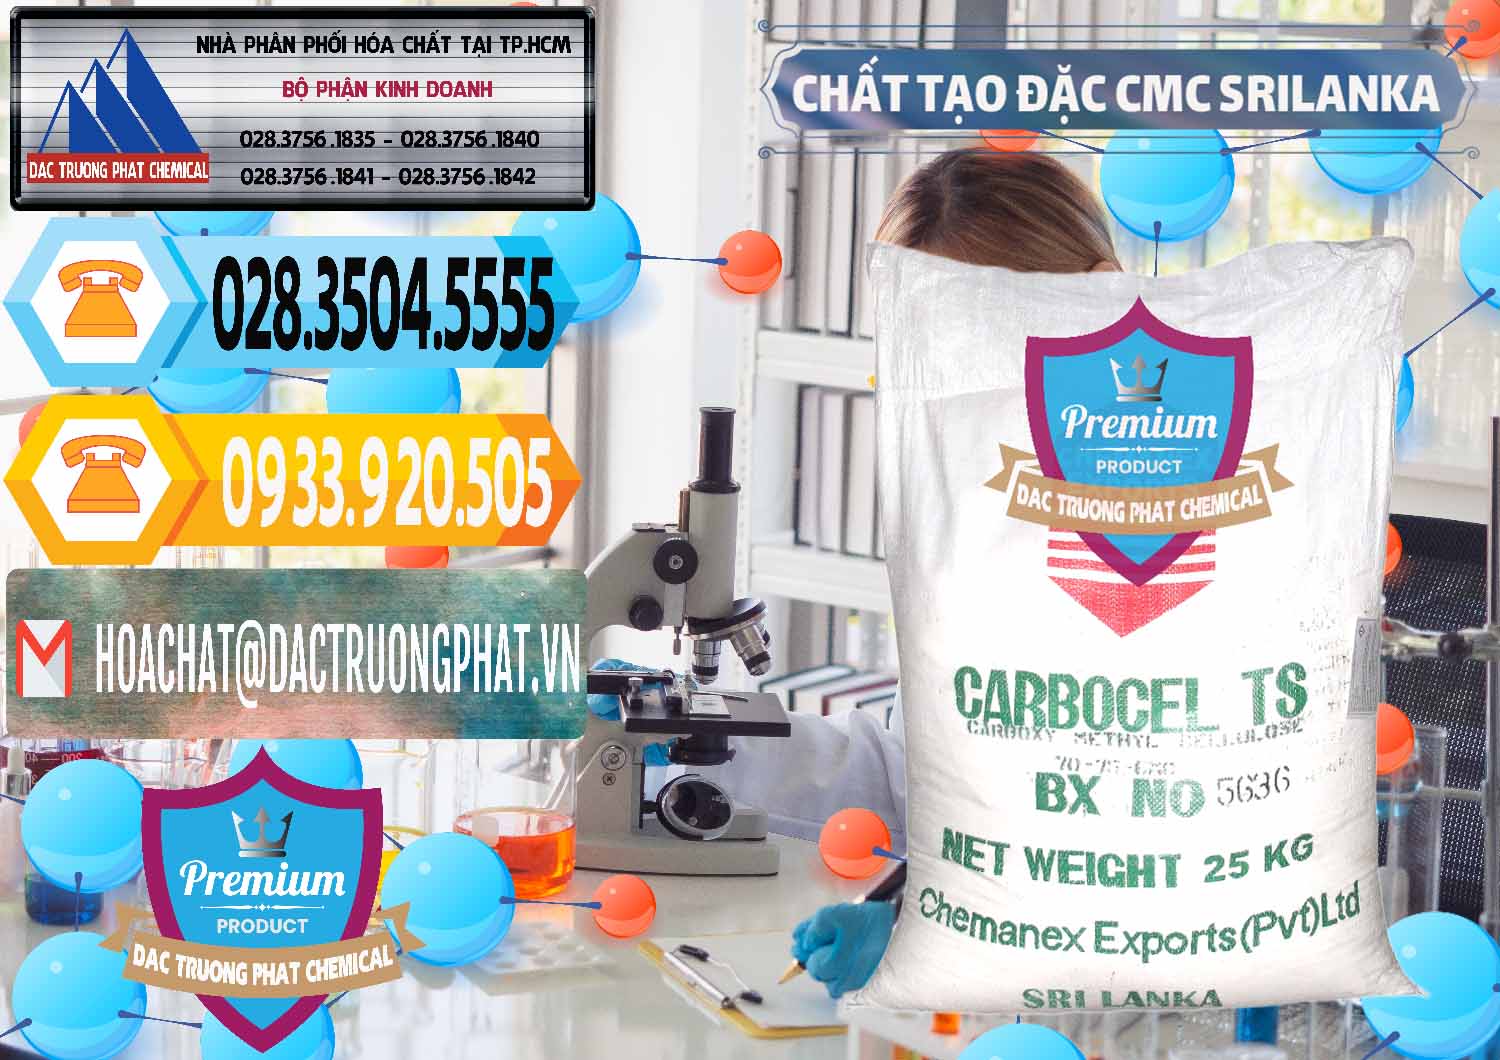 Bán _ cung ứng Chất Tạo Đặc CMC - Carboxyl Methyl Cellulose Srilanka - 0045 - Chuyên phân phối và kinh doanh hóa chất tại TP.HCM - hoachattayrua.net